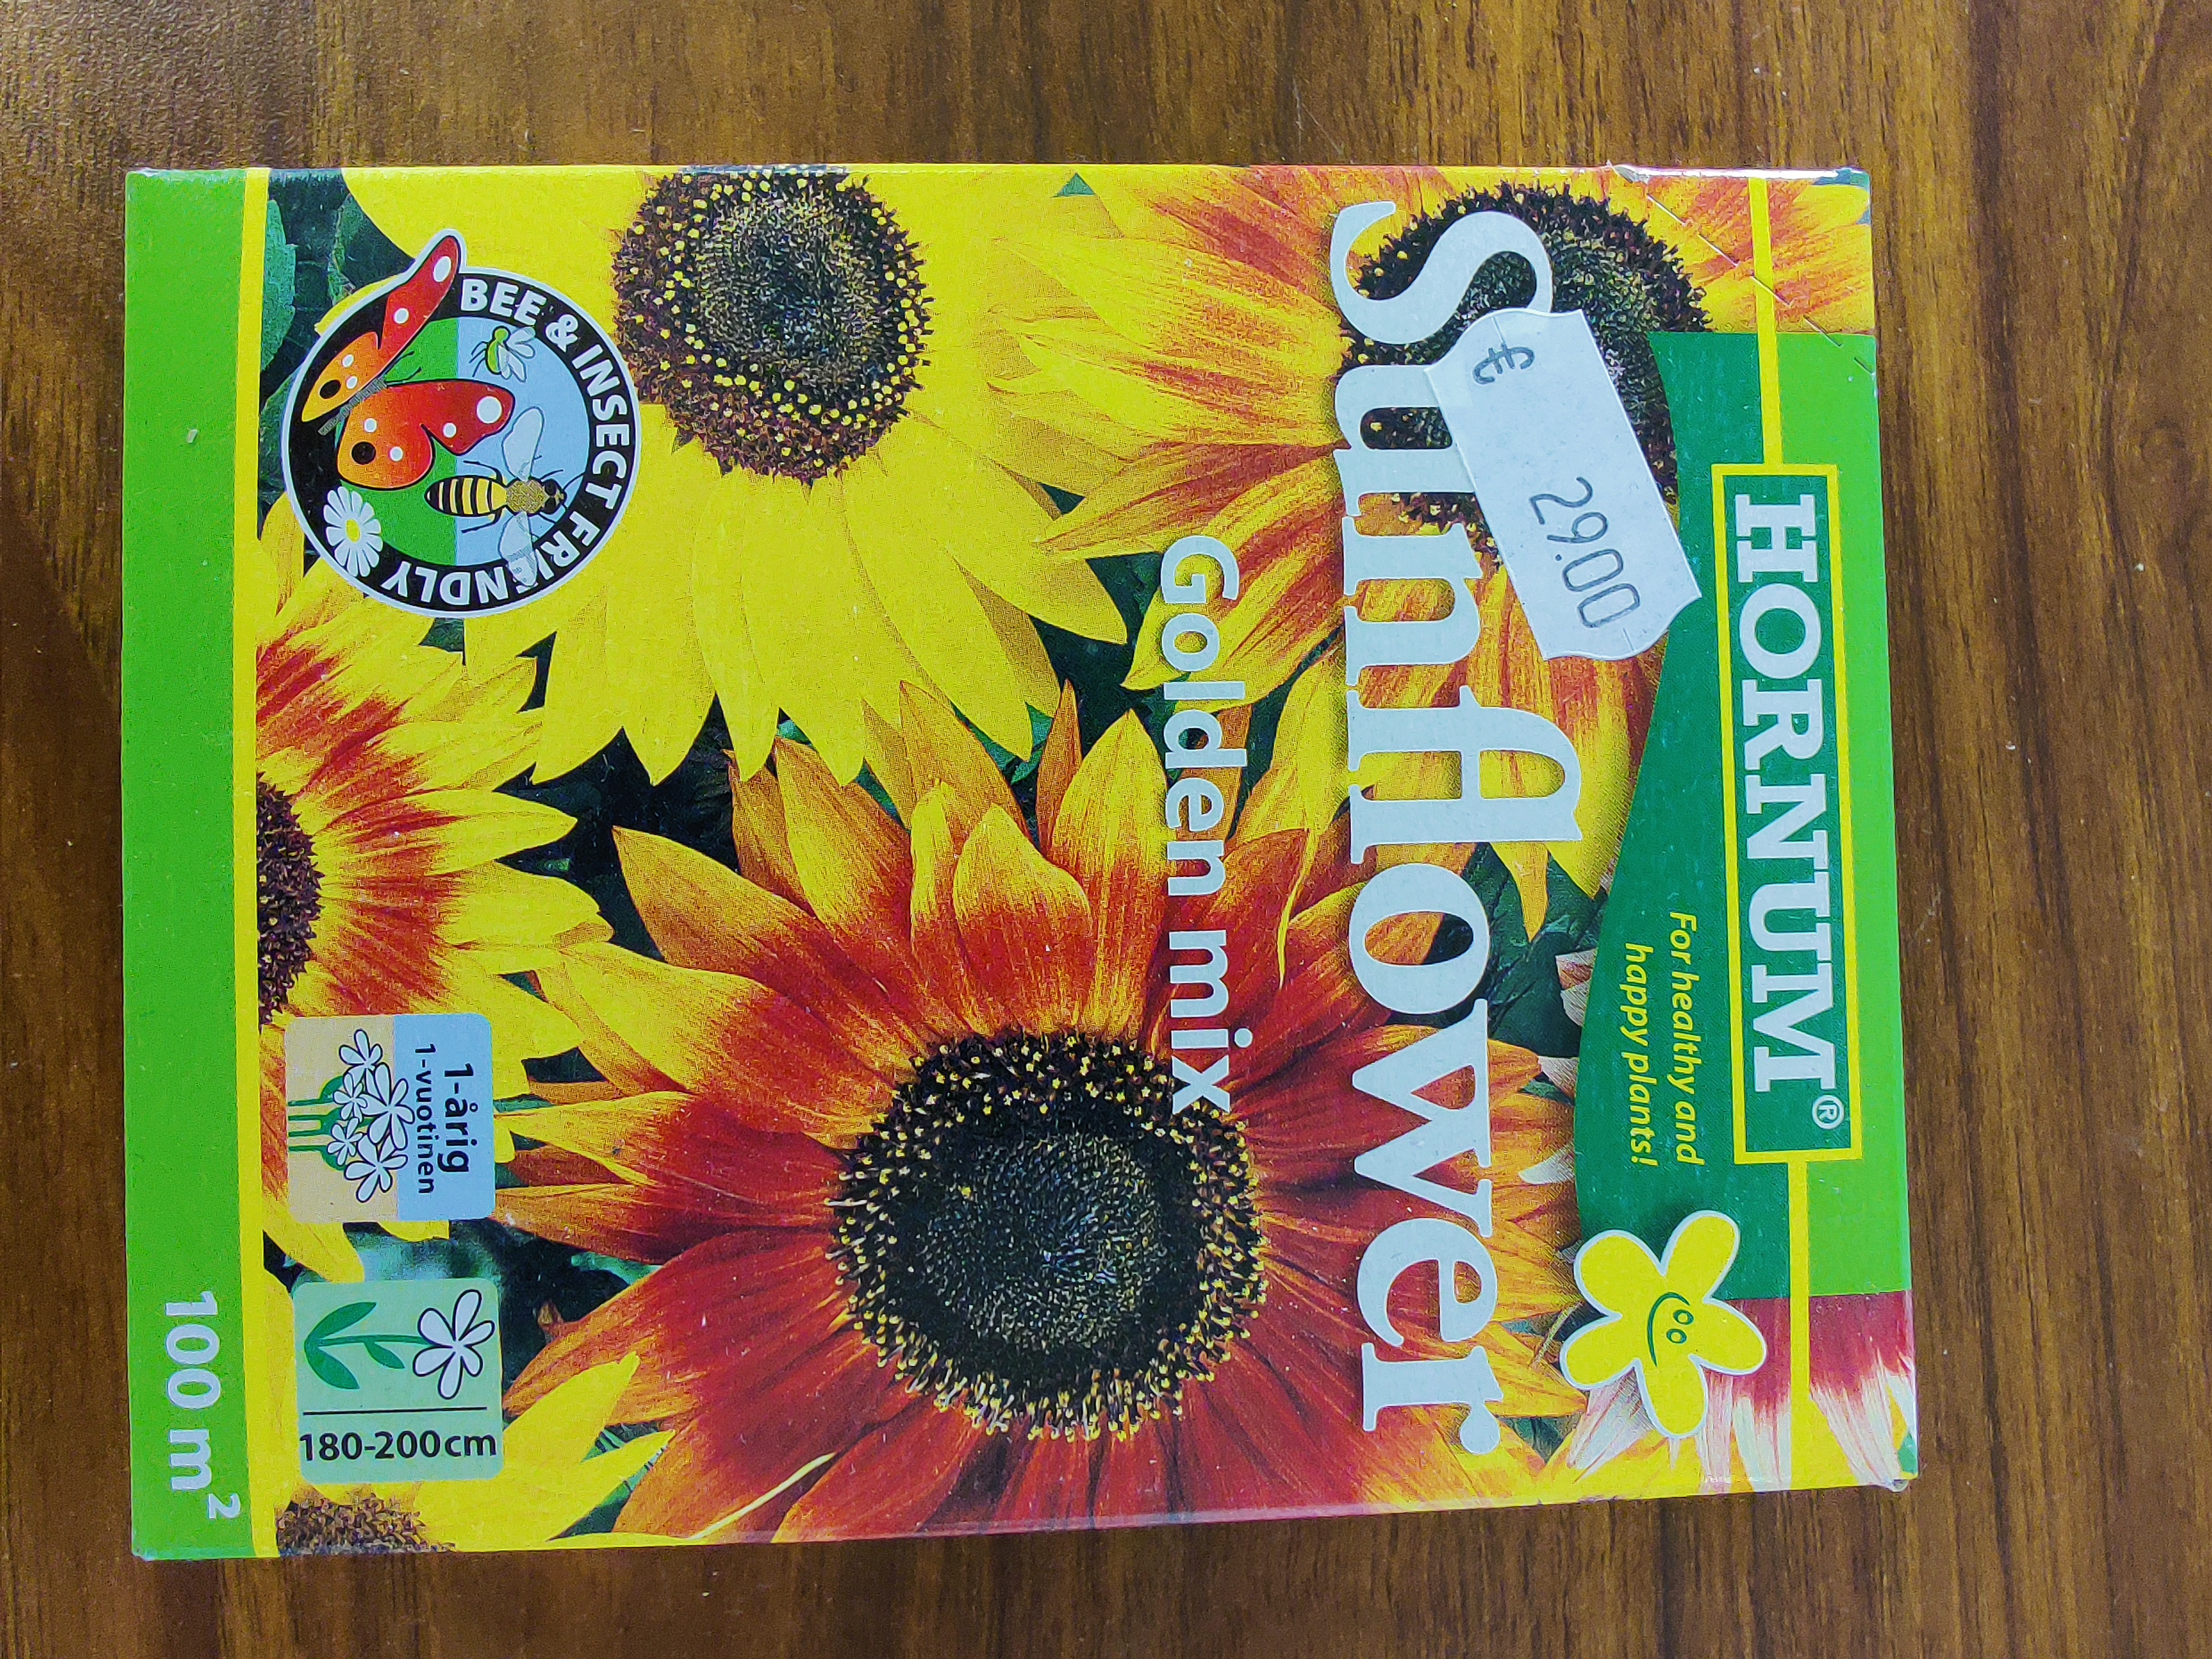 Sunflower golden mix